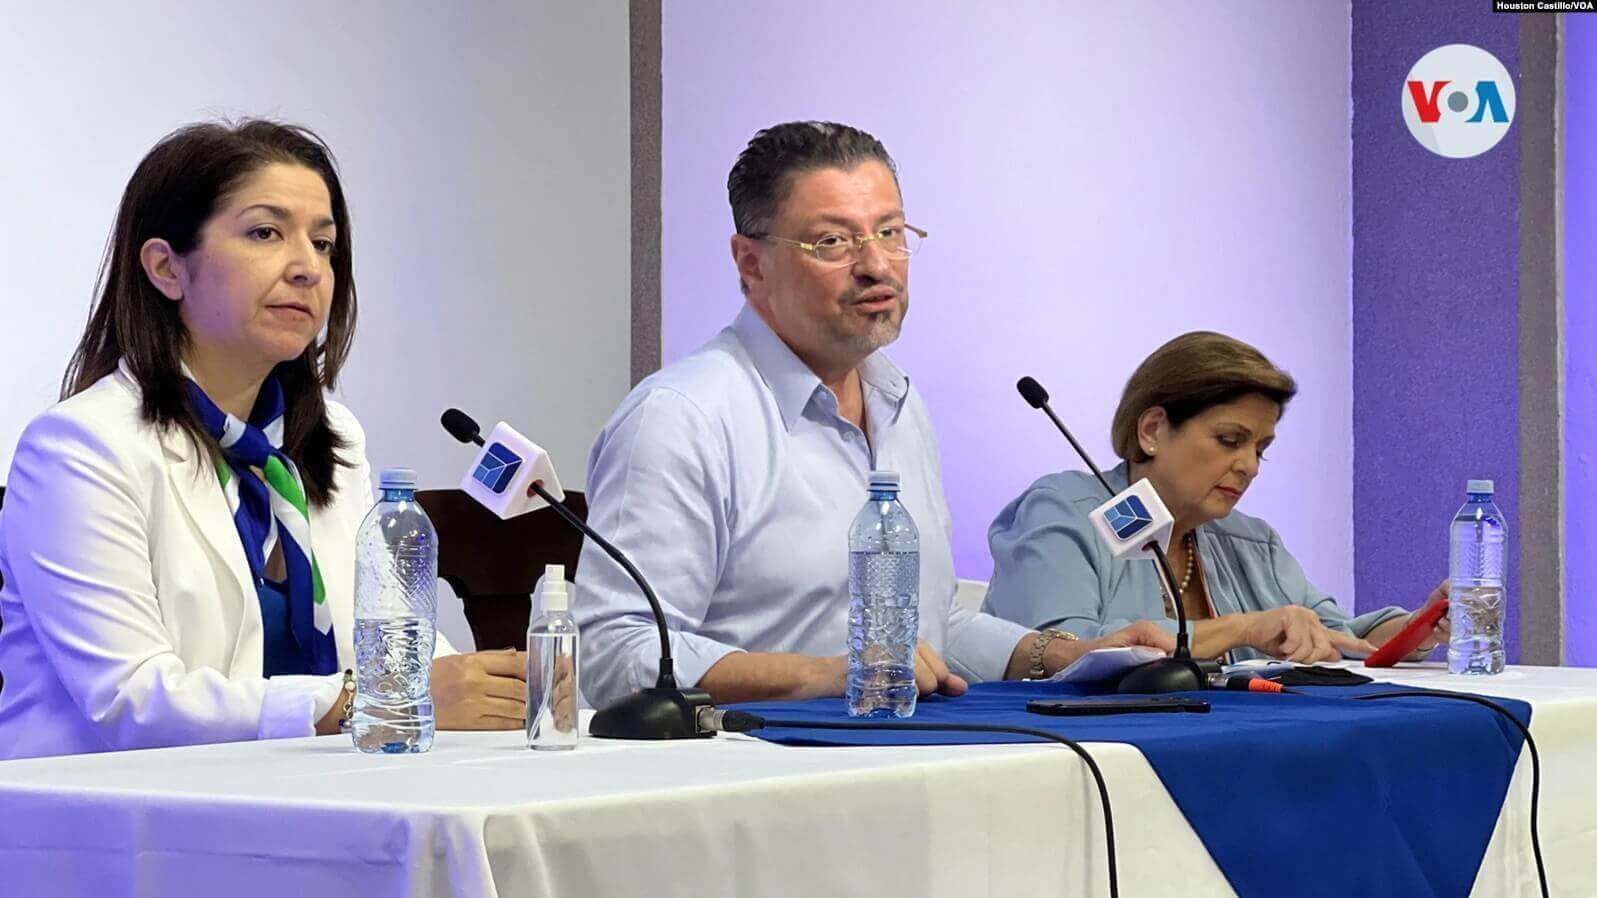 Rodrigo Chaves, presidente electo de Costa Rica, durante una conferencia de prensa este domingo en el Colegio de Periodistas. [Foto: Houston Castillo, VOA]